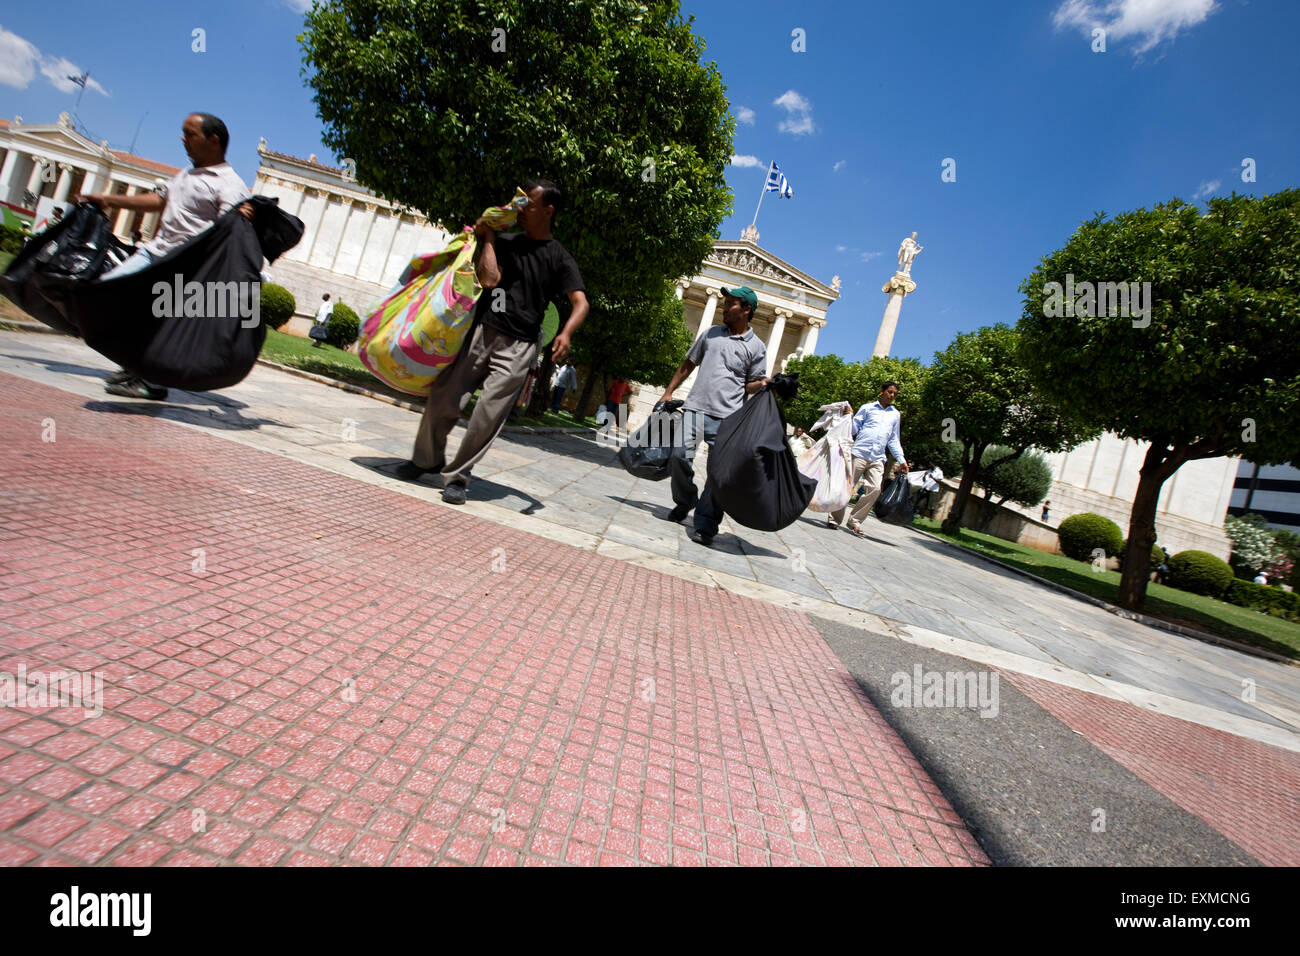 Lavoratori migranti venditori ambulanti in esecuzione con i loro beni per sfuggire dalla polizia li insegue all Università di Atene, Panepistimiou street. Foto Stock